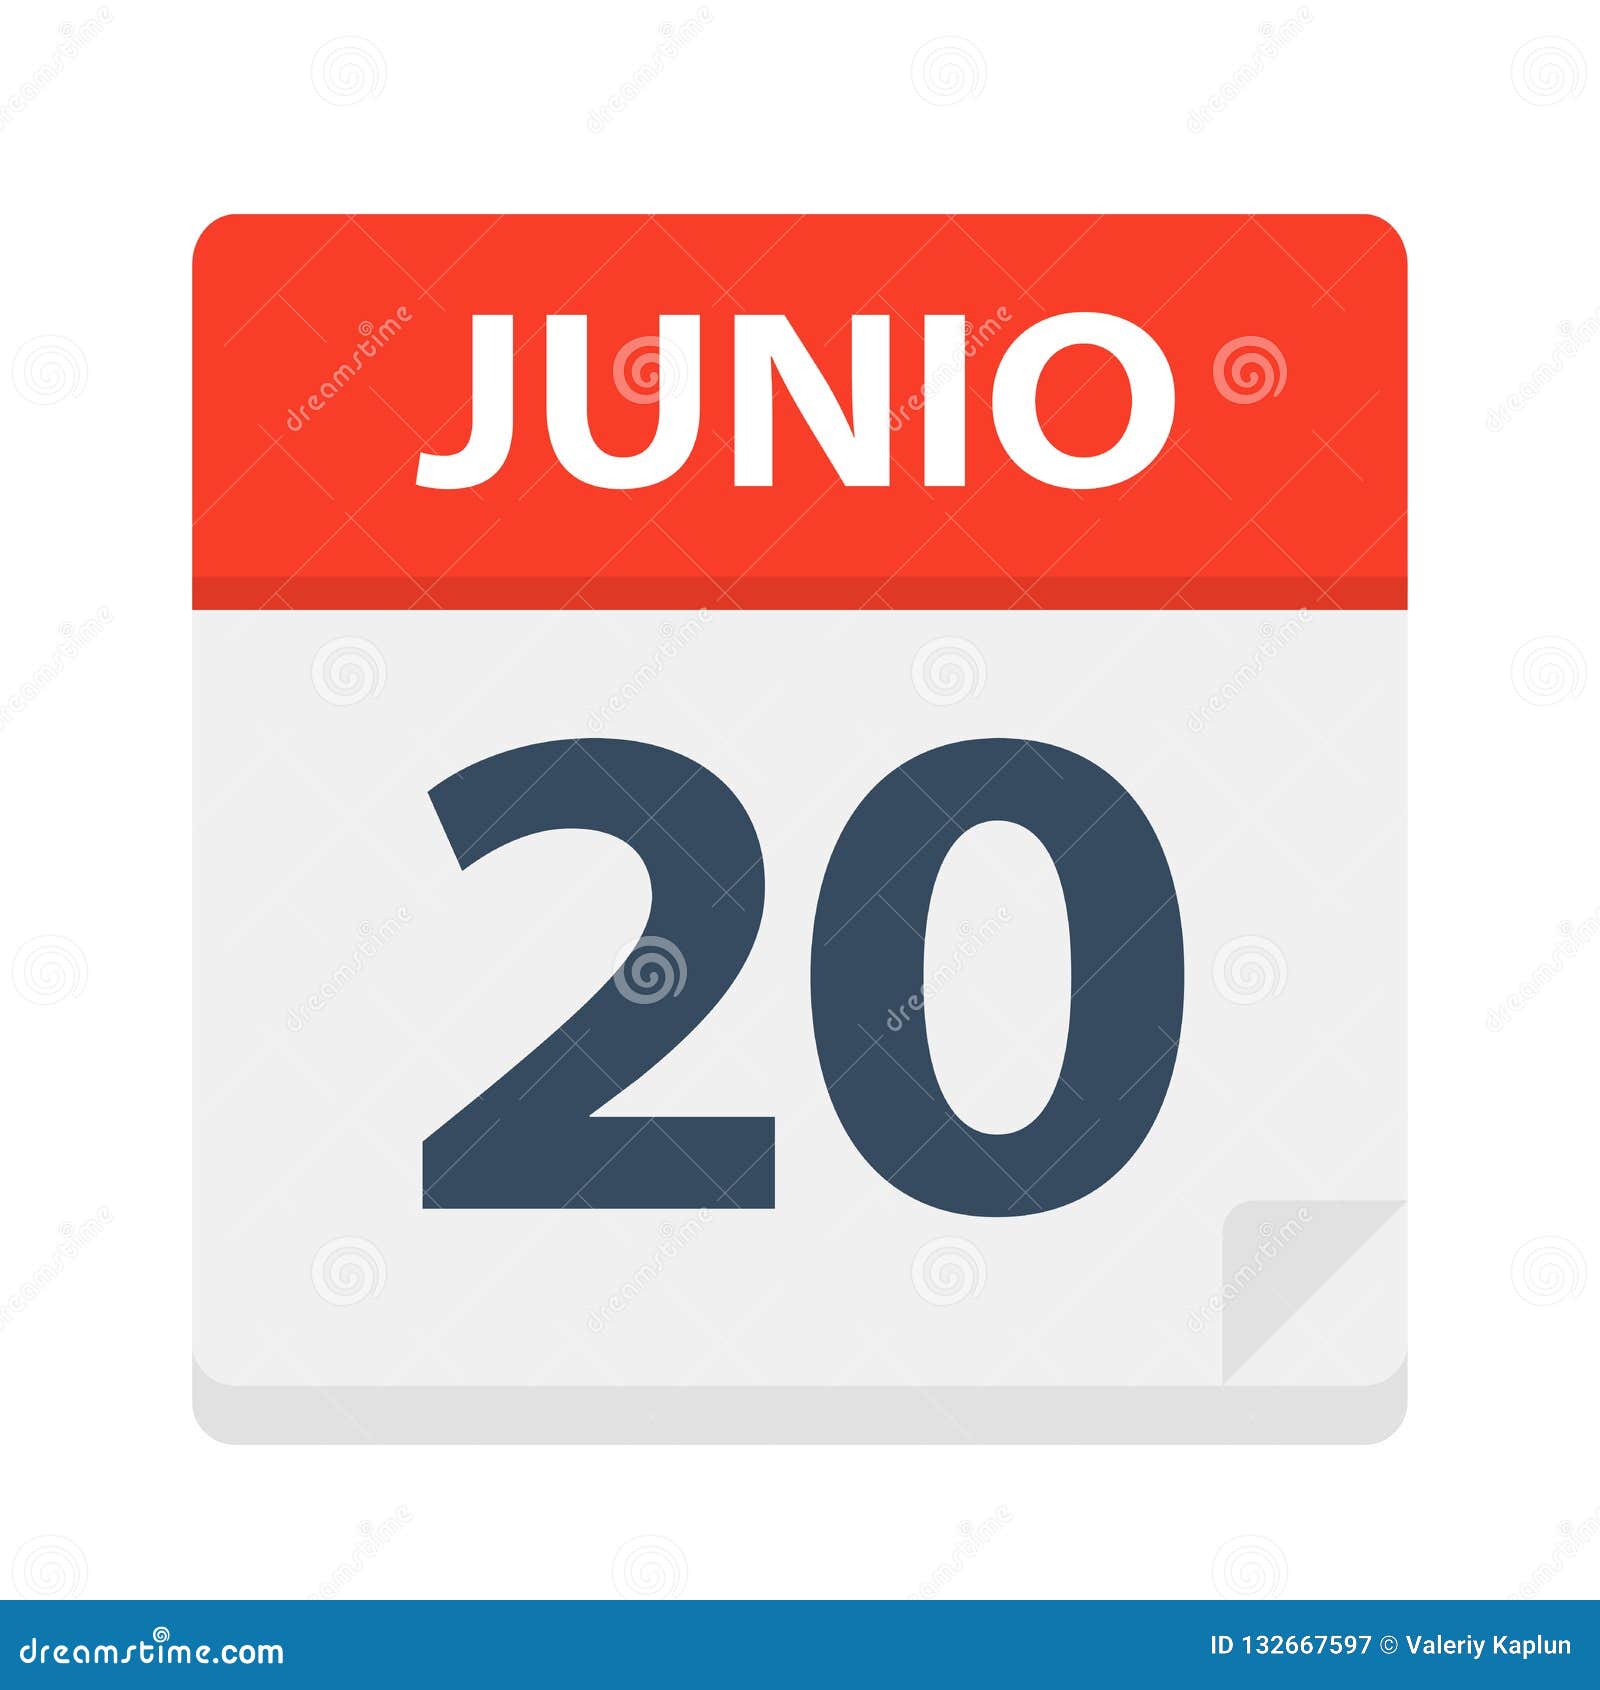 junio 20 - calendar icon - june 20.   of spanish calendar leaf